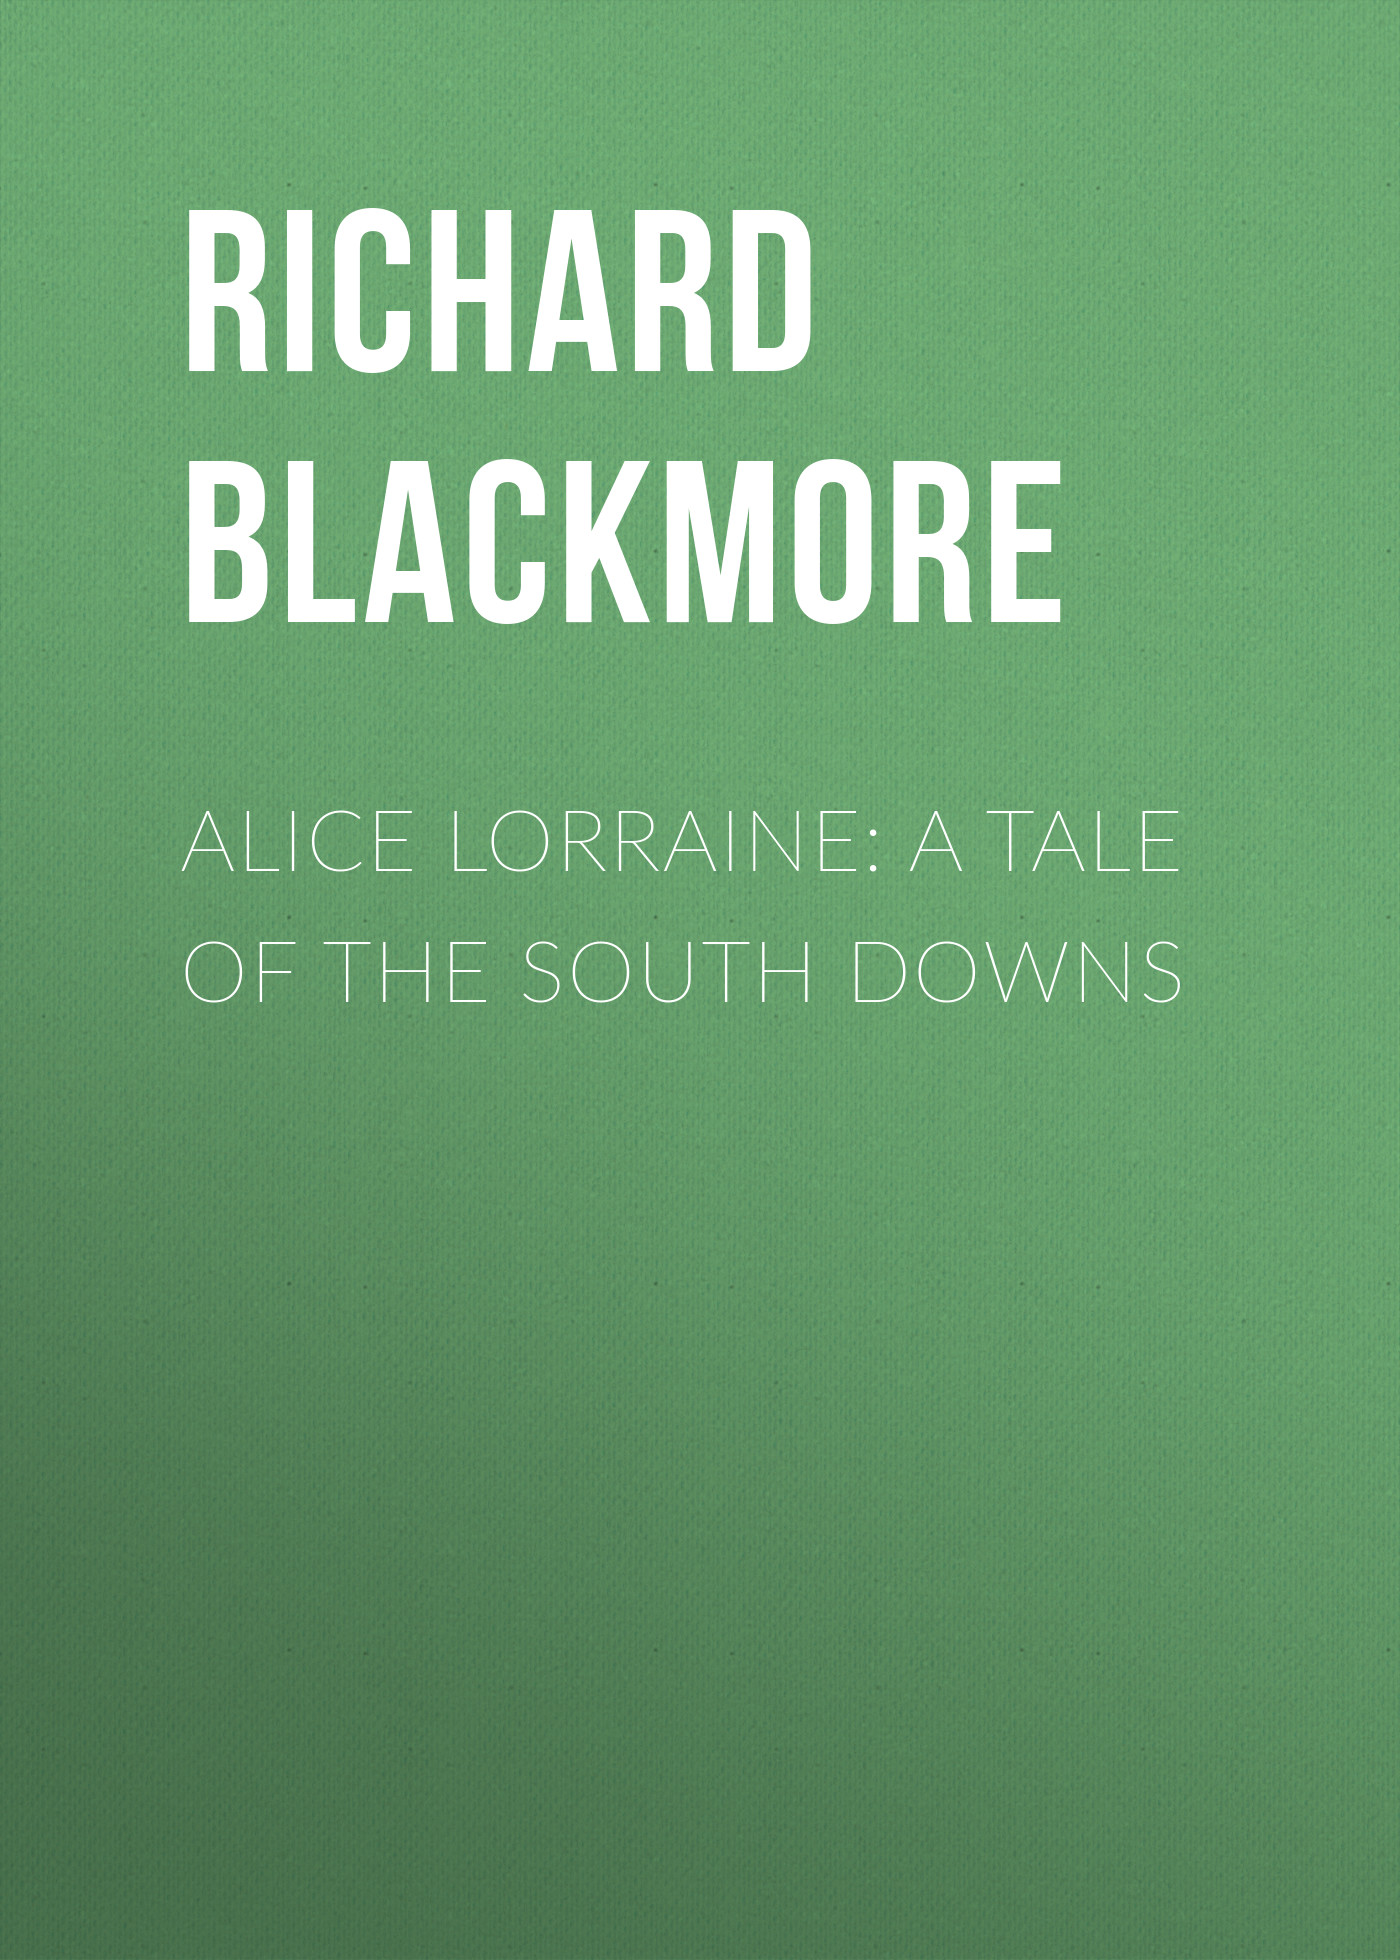 Книга Alice Lorraine: A Tale of the South Downs из серии , созданная Richard Blackmore, может относится к жанру Зарубежная классика. Стоимость электронной книги Alice Lorraine: A Tale of the South Downs с идентификатором 23147763 составляет 5.99 руб.